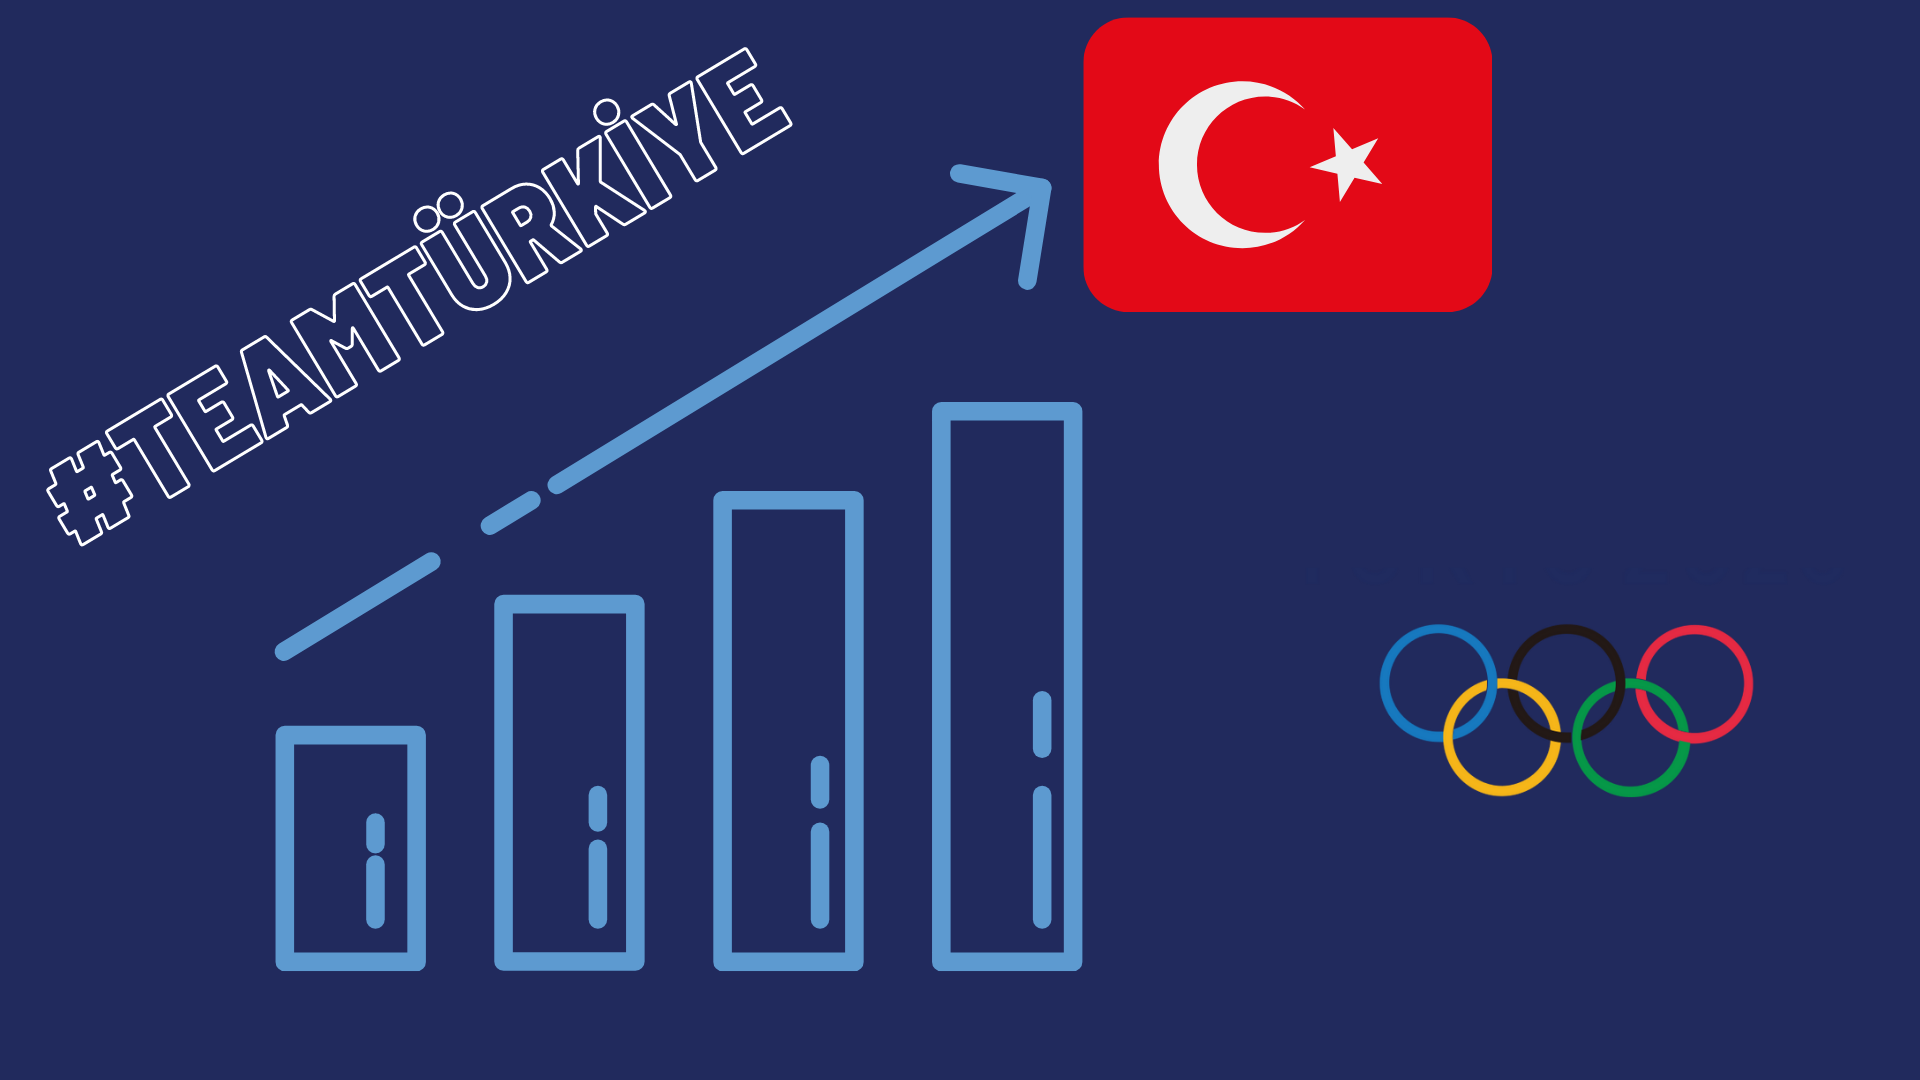 2020 Tokyo Olimpiyatları Türkiye Raporu ile ilgili bir görsel.